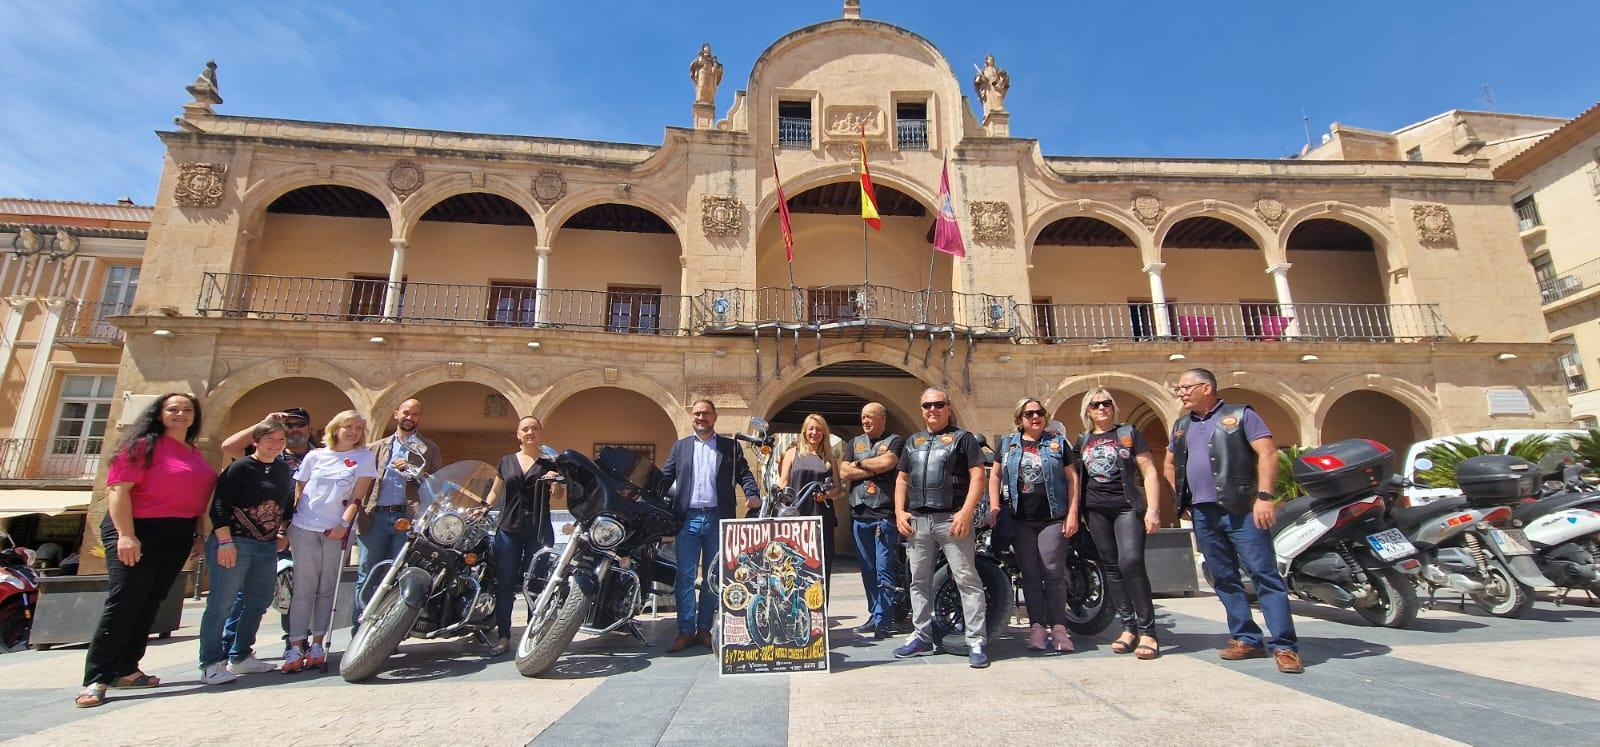 El sexto festival ‘Custom Lorca’ tendrá lugar este fin de semana en el antiguo Convento de La Merced y participarán mototuristas de toda la geografía española